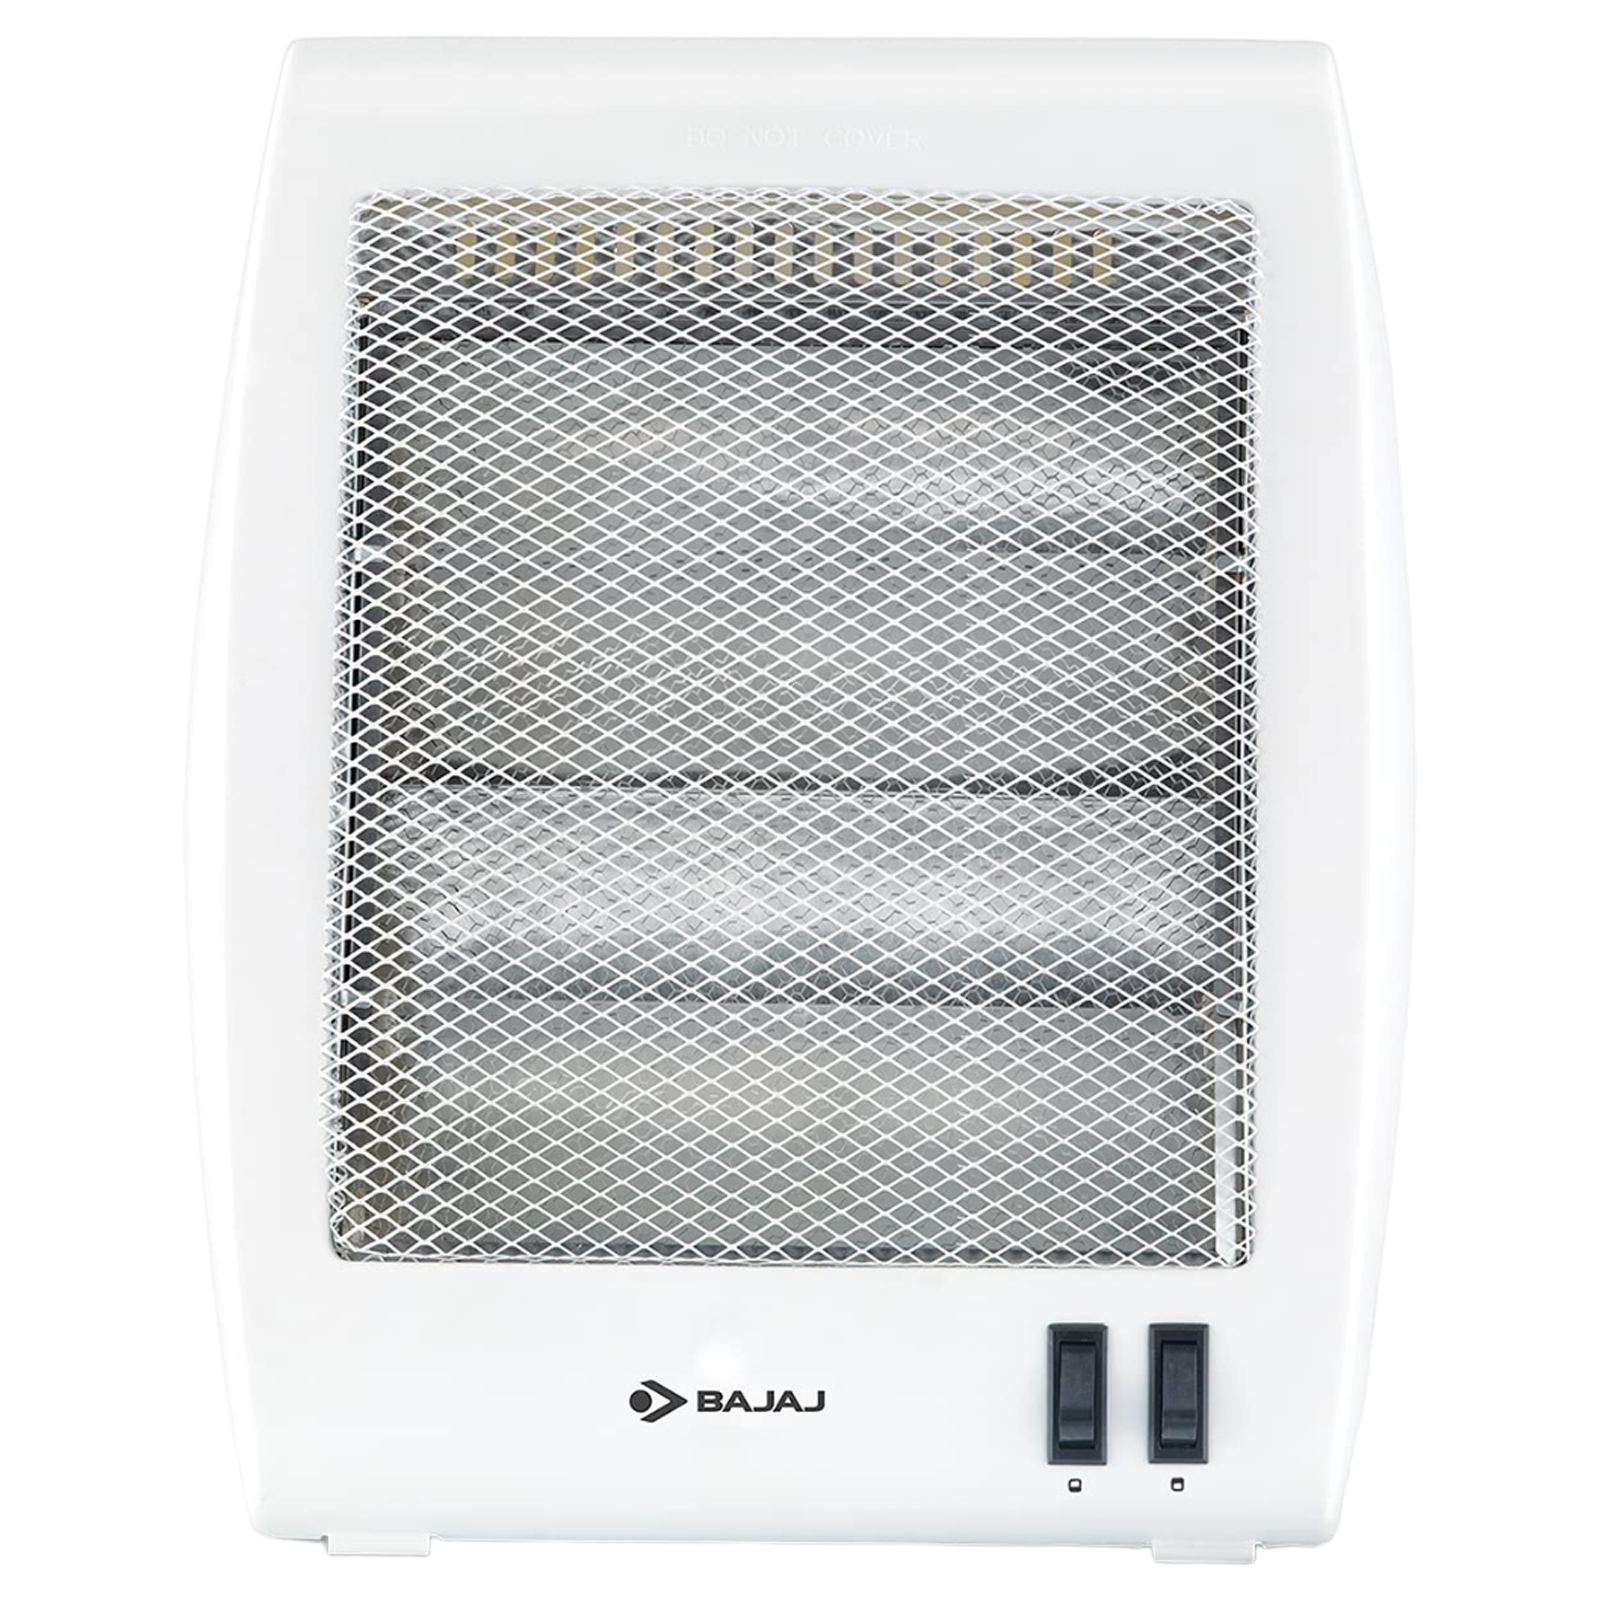 BAJAJ RHX-2 800 Watts Halogen Room Heater (Noiseless Operation, White)